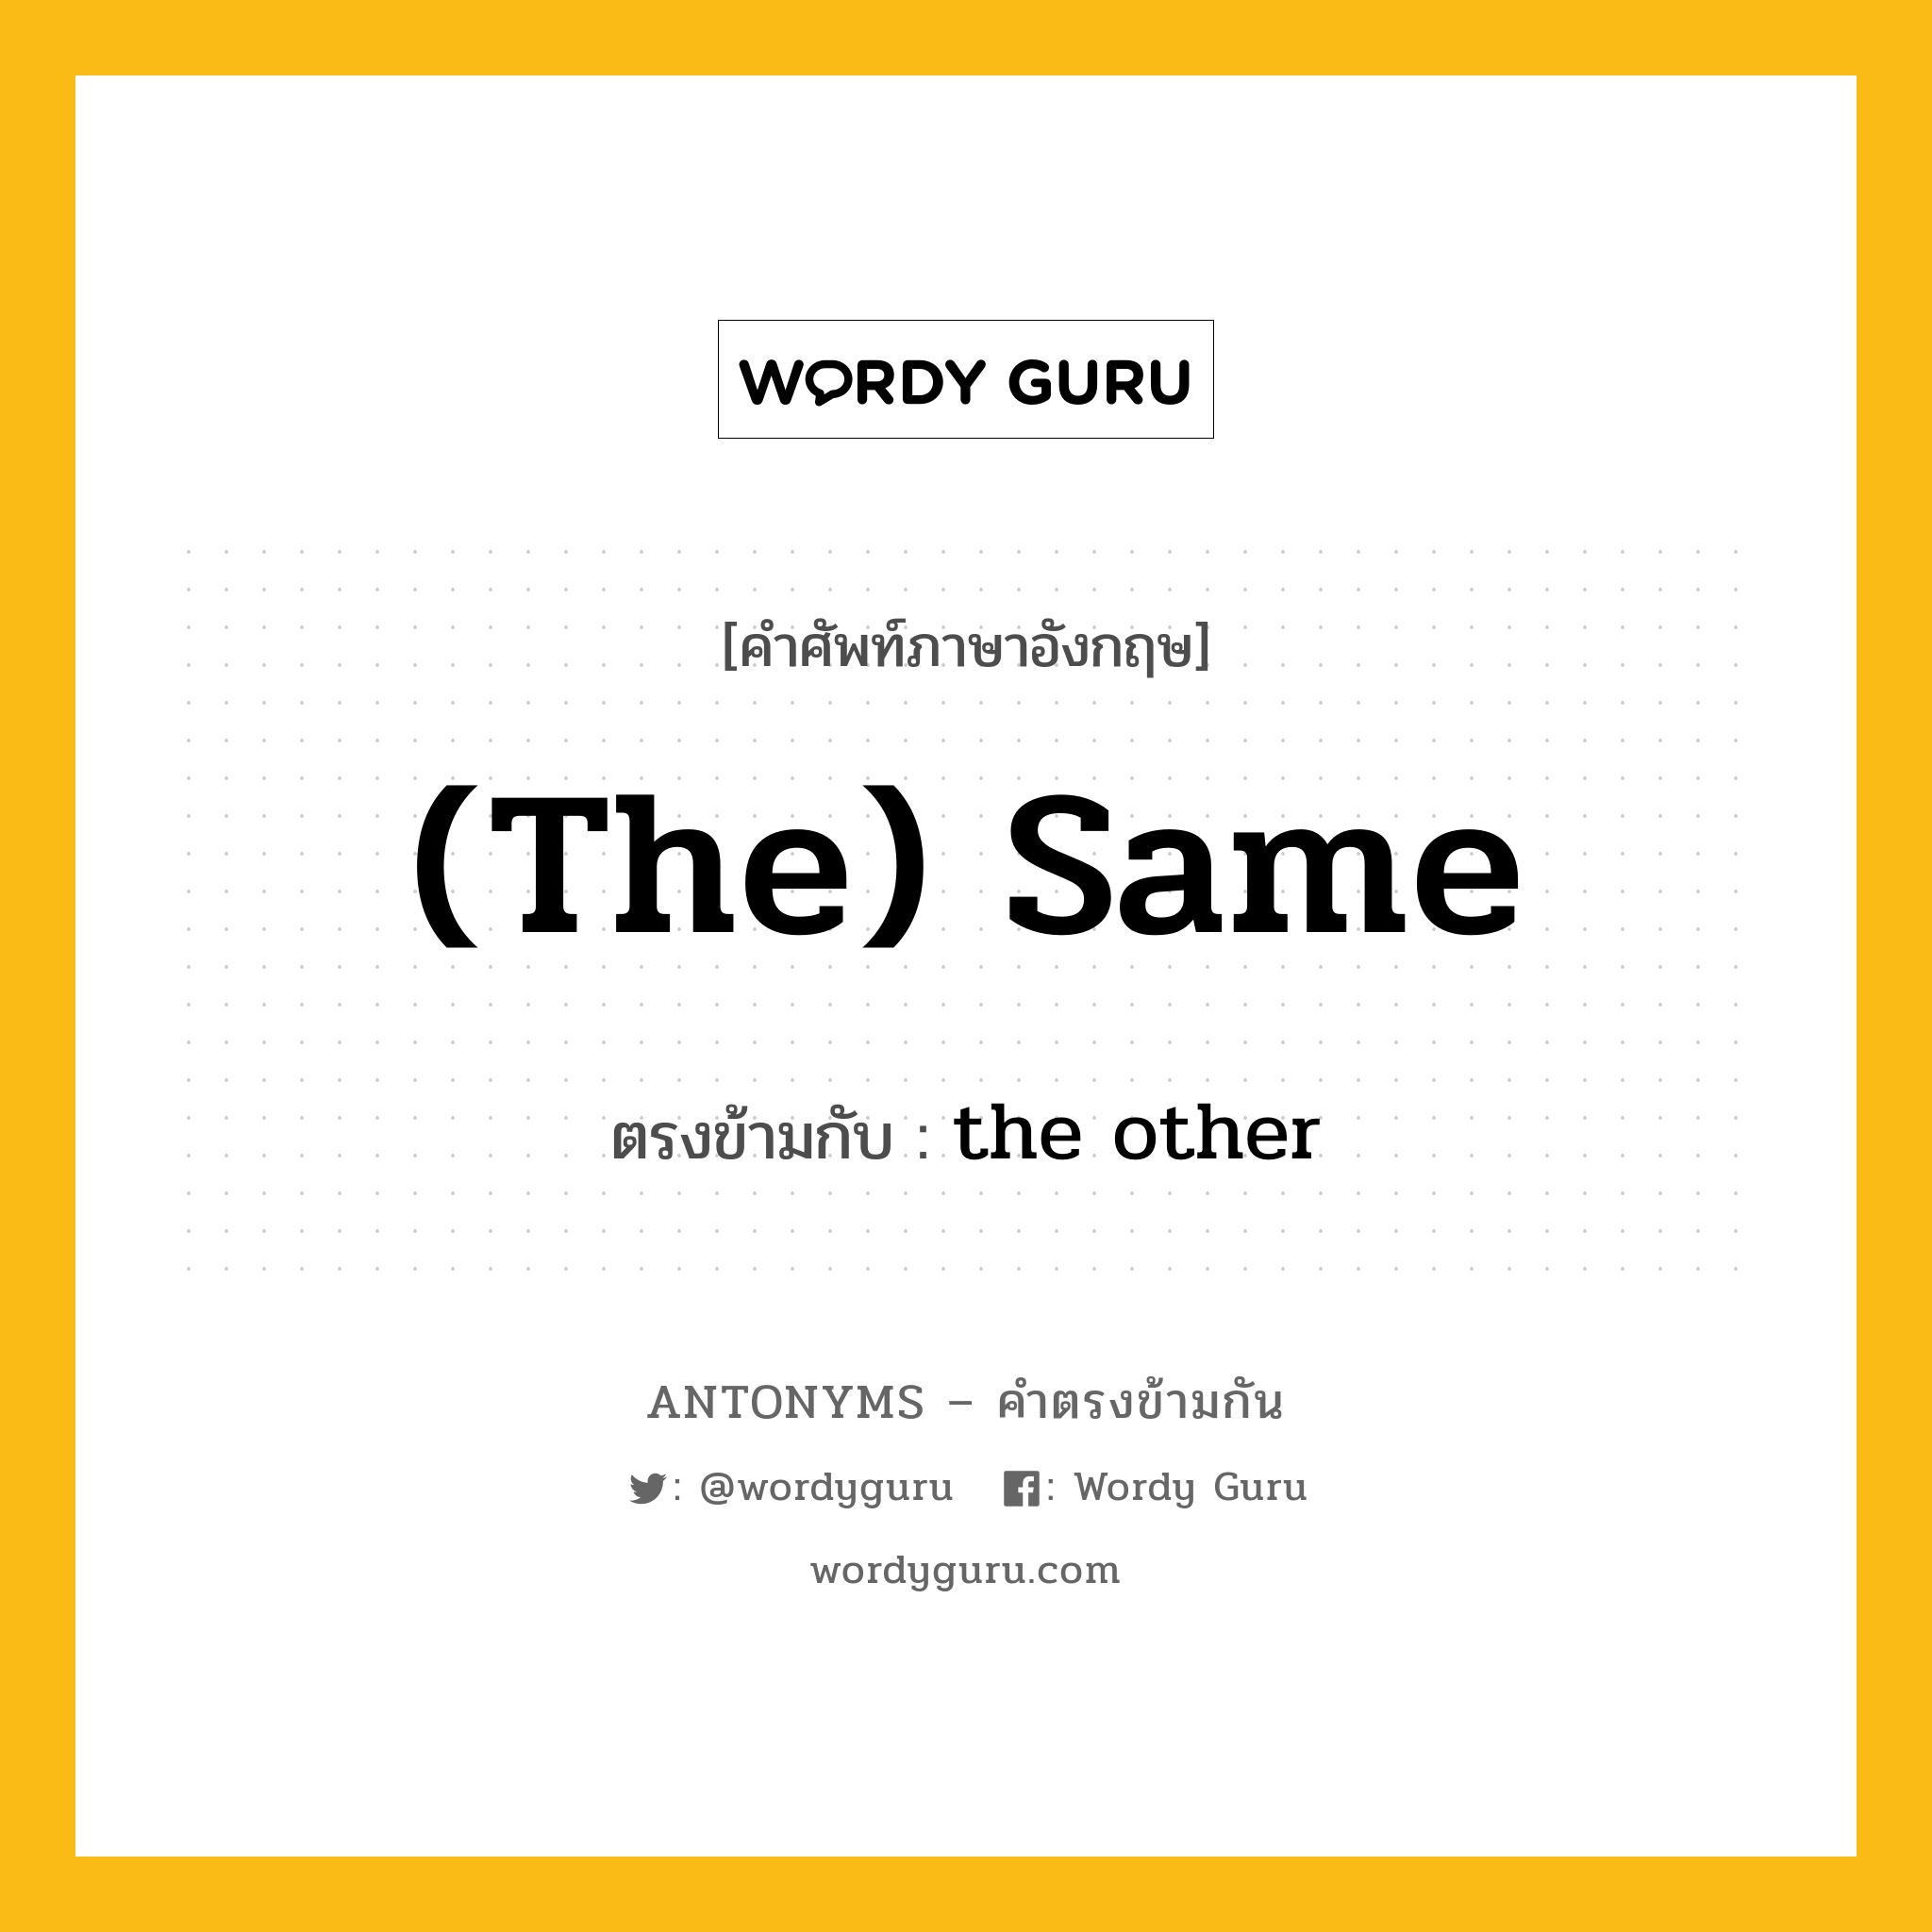 (the) same เป็นคำตรงข้ามกับคำไหนบ้าง?, คำศัพท์ภาษาอังกฤษ (the) same ตรงข้ามกับ the other หมวด the other